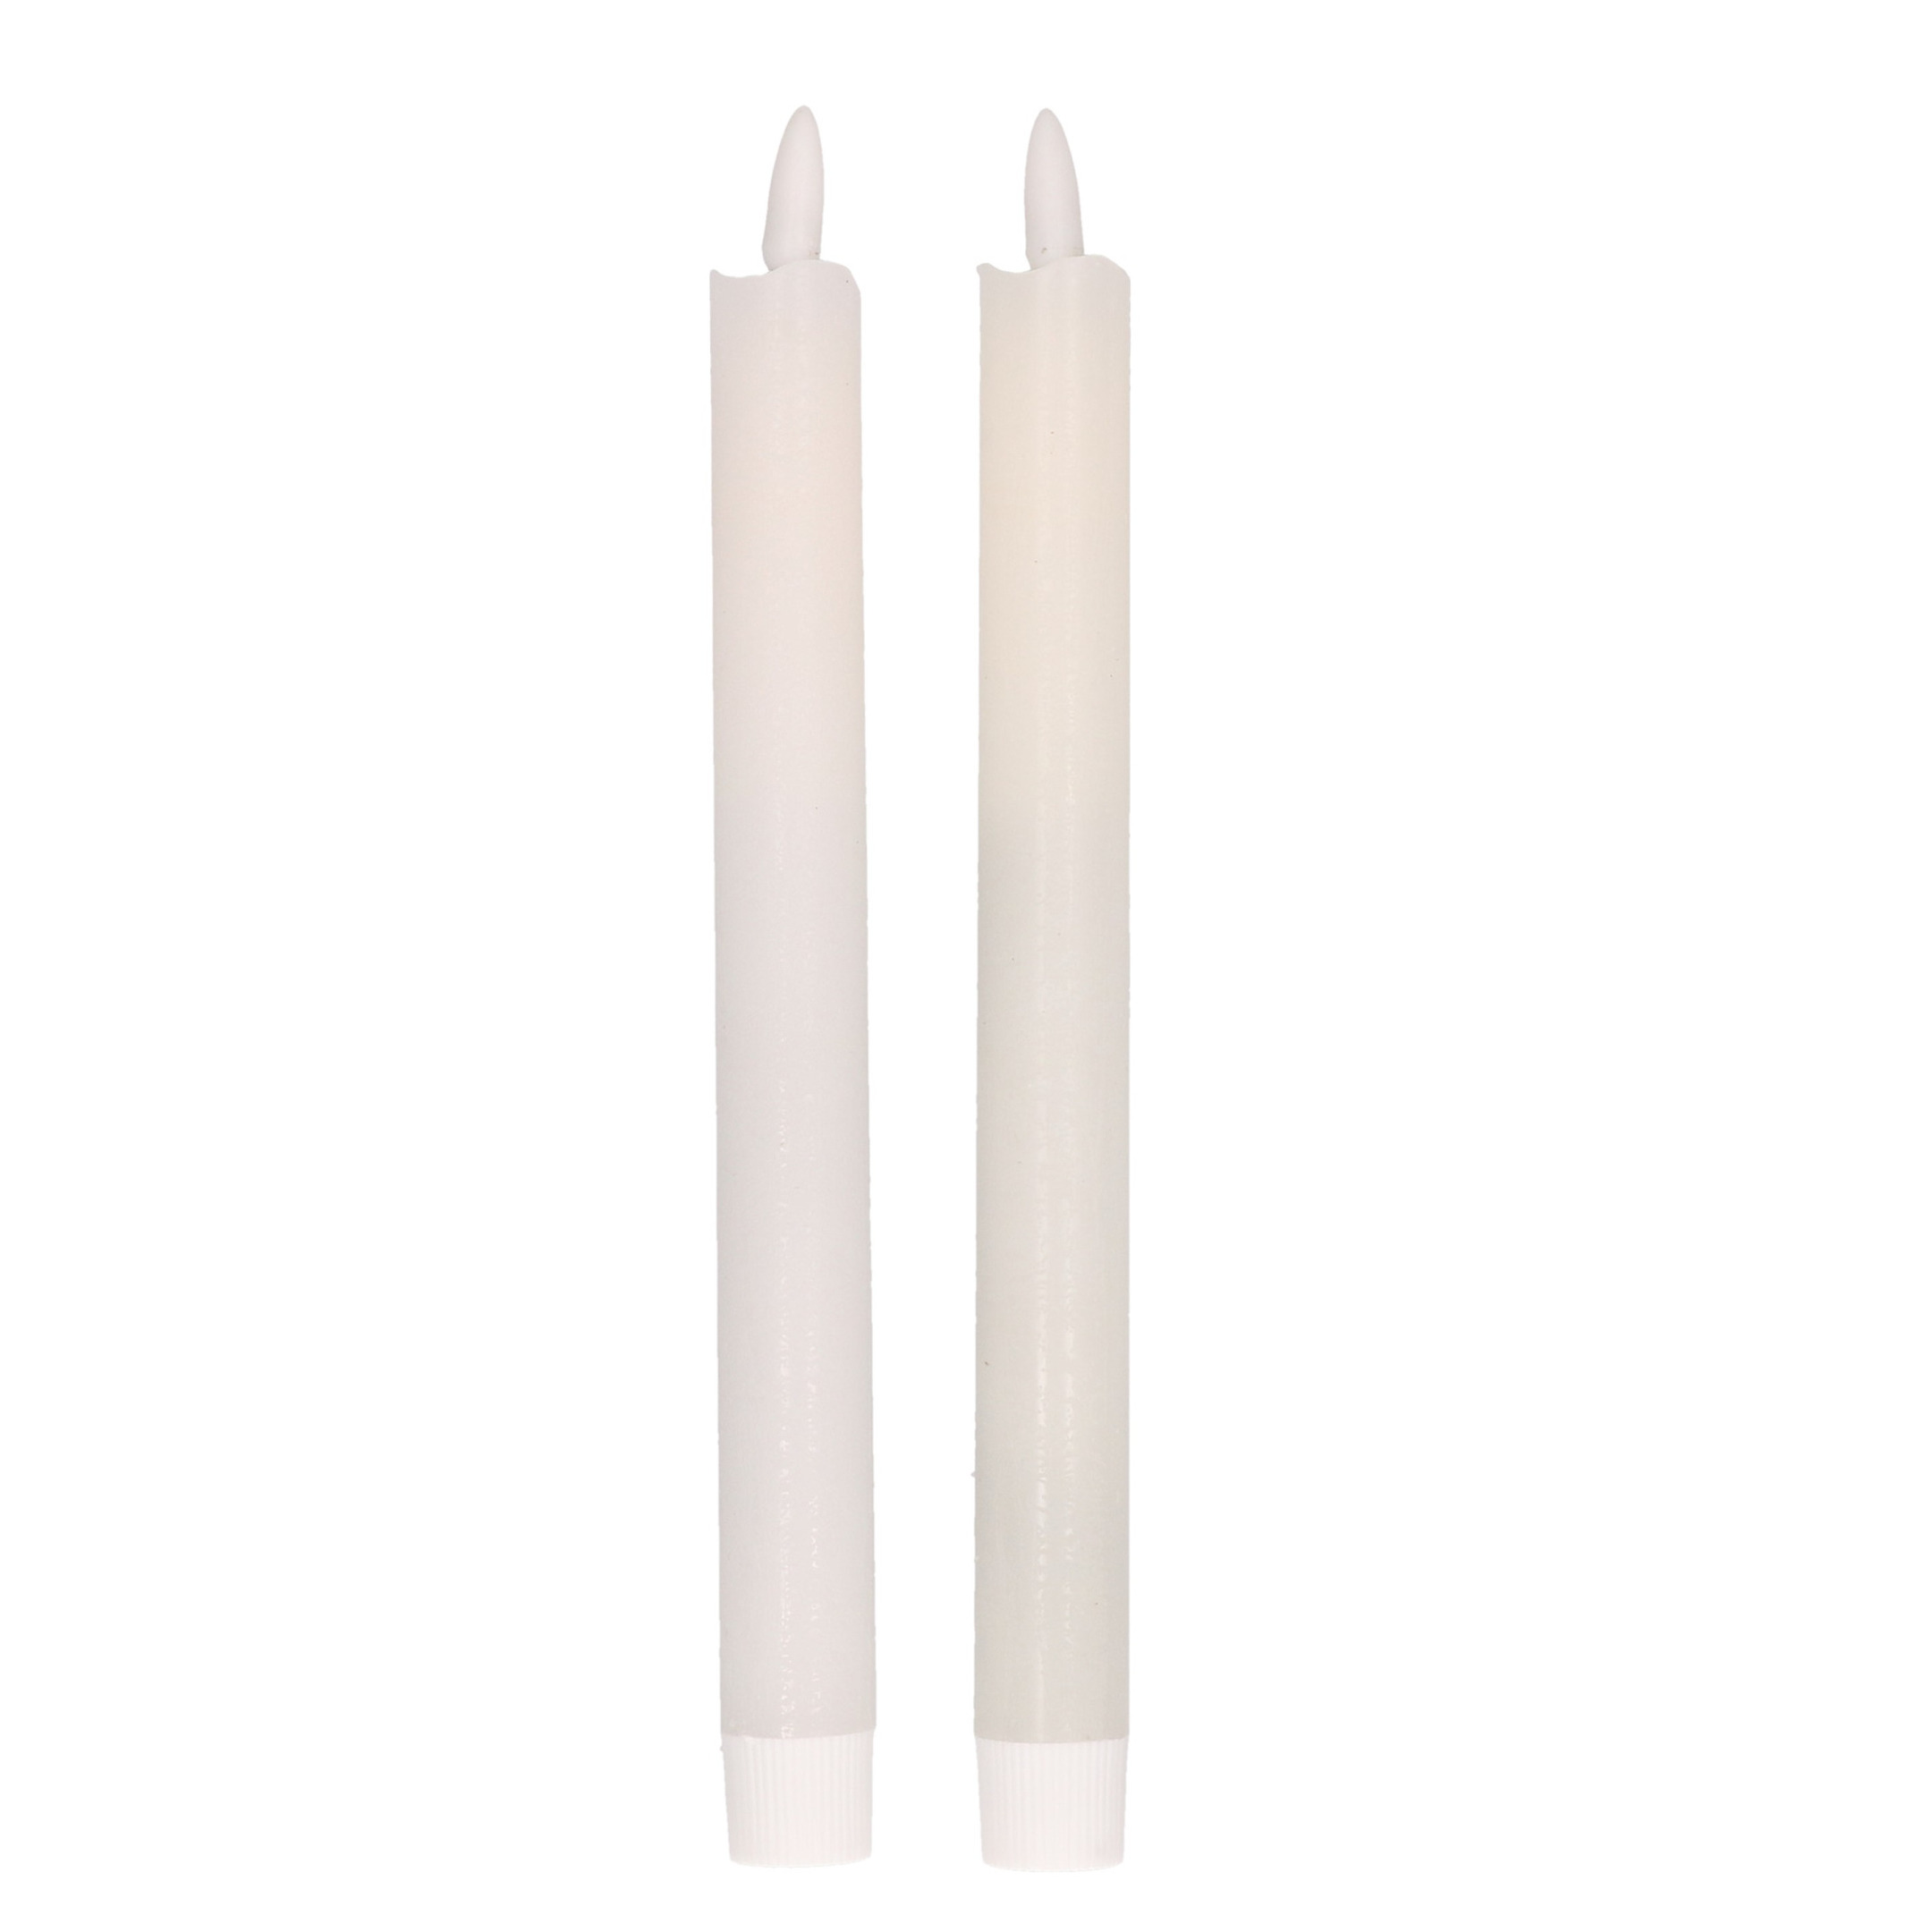 2x Kerstdiner-diner kaarsen wit LED 25,5 cm